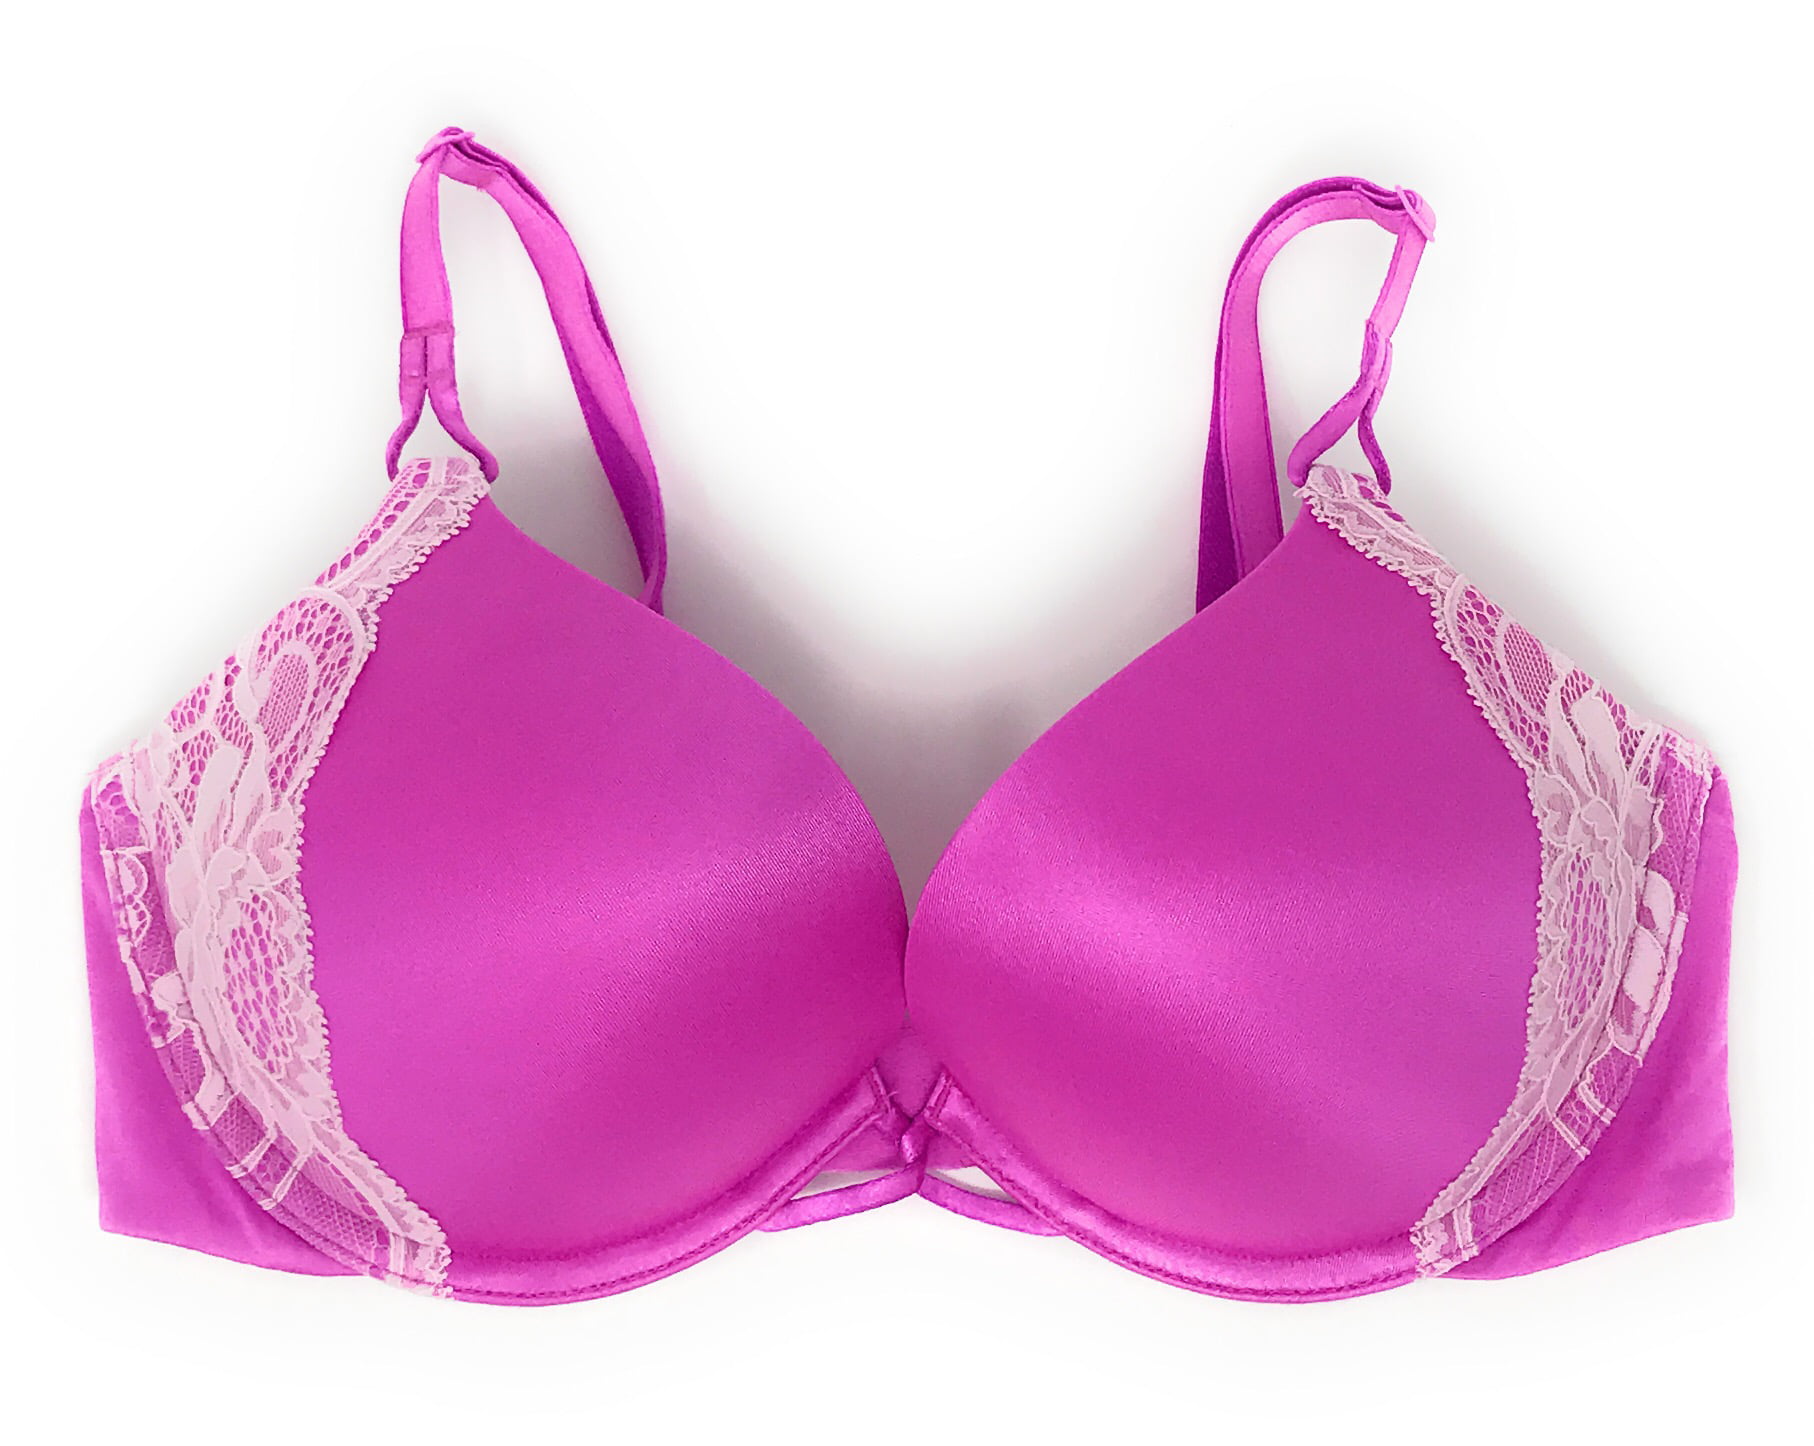 Victoria's Secret Pushup Bra Set Panty Size: 34B, 34C, 36B, 36C, 38B, 38C  Price: 360.000/set bra+panty (Di web 1,5 juta per set)